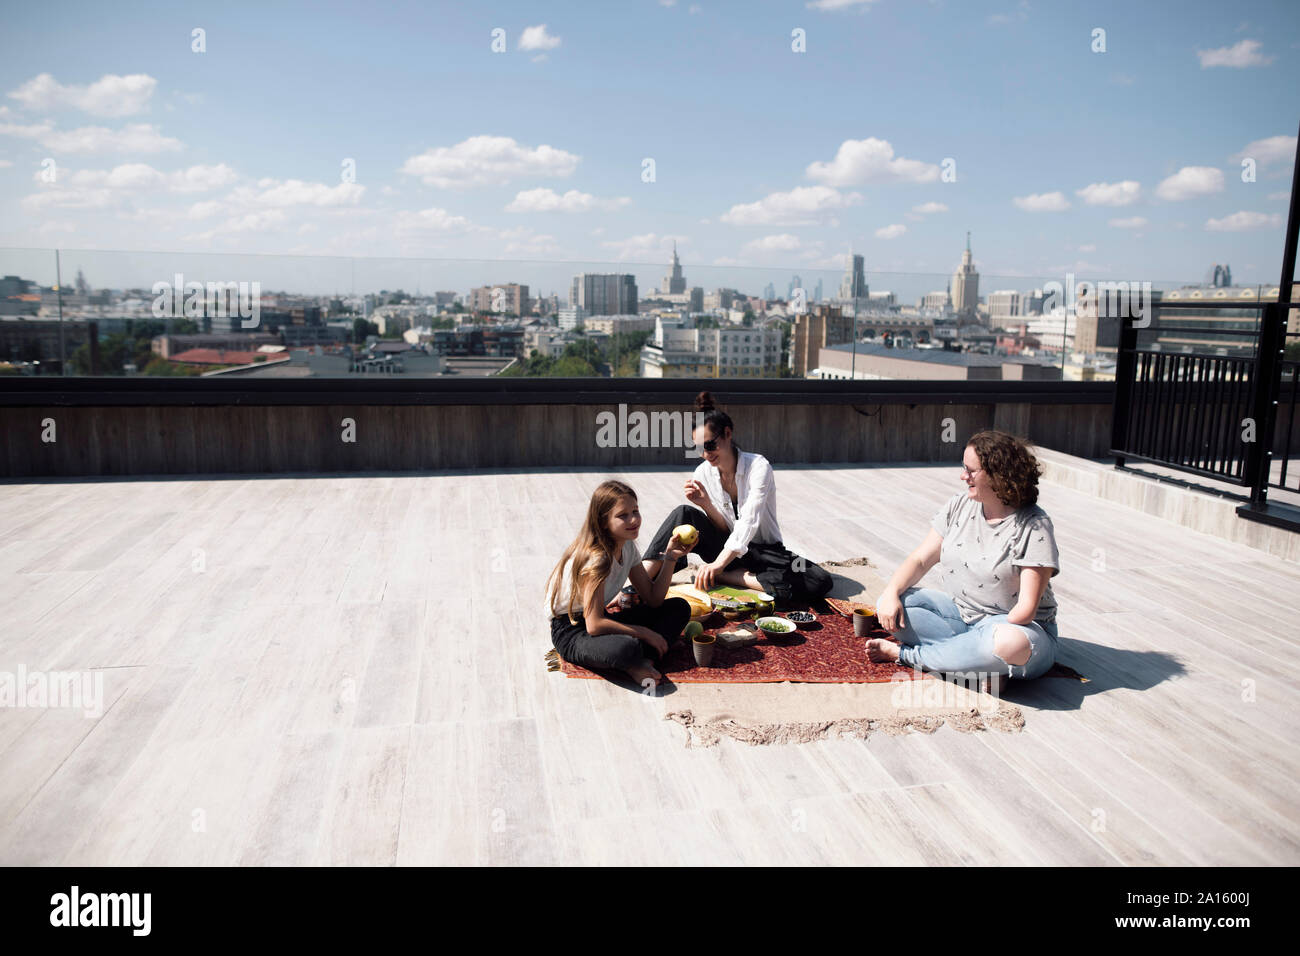 Frau mit unten - Winkelstück Amputation eine gesunde Mahlzeit auf dem Dach mit Frau und Mädchen Stockfoto